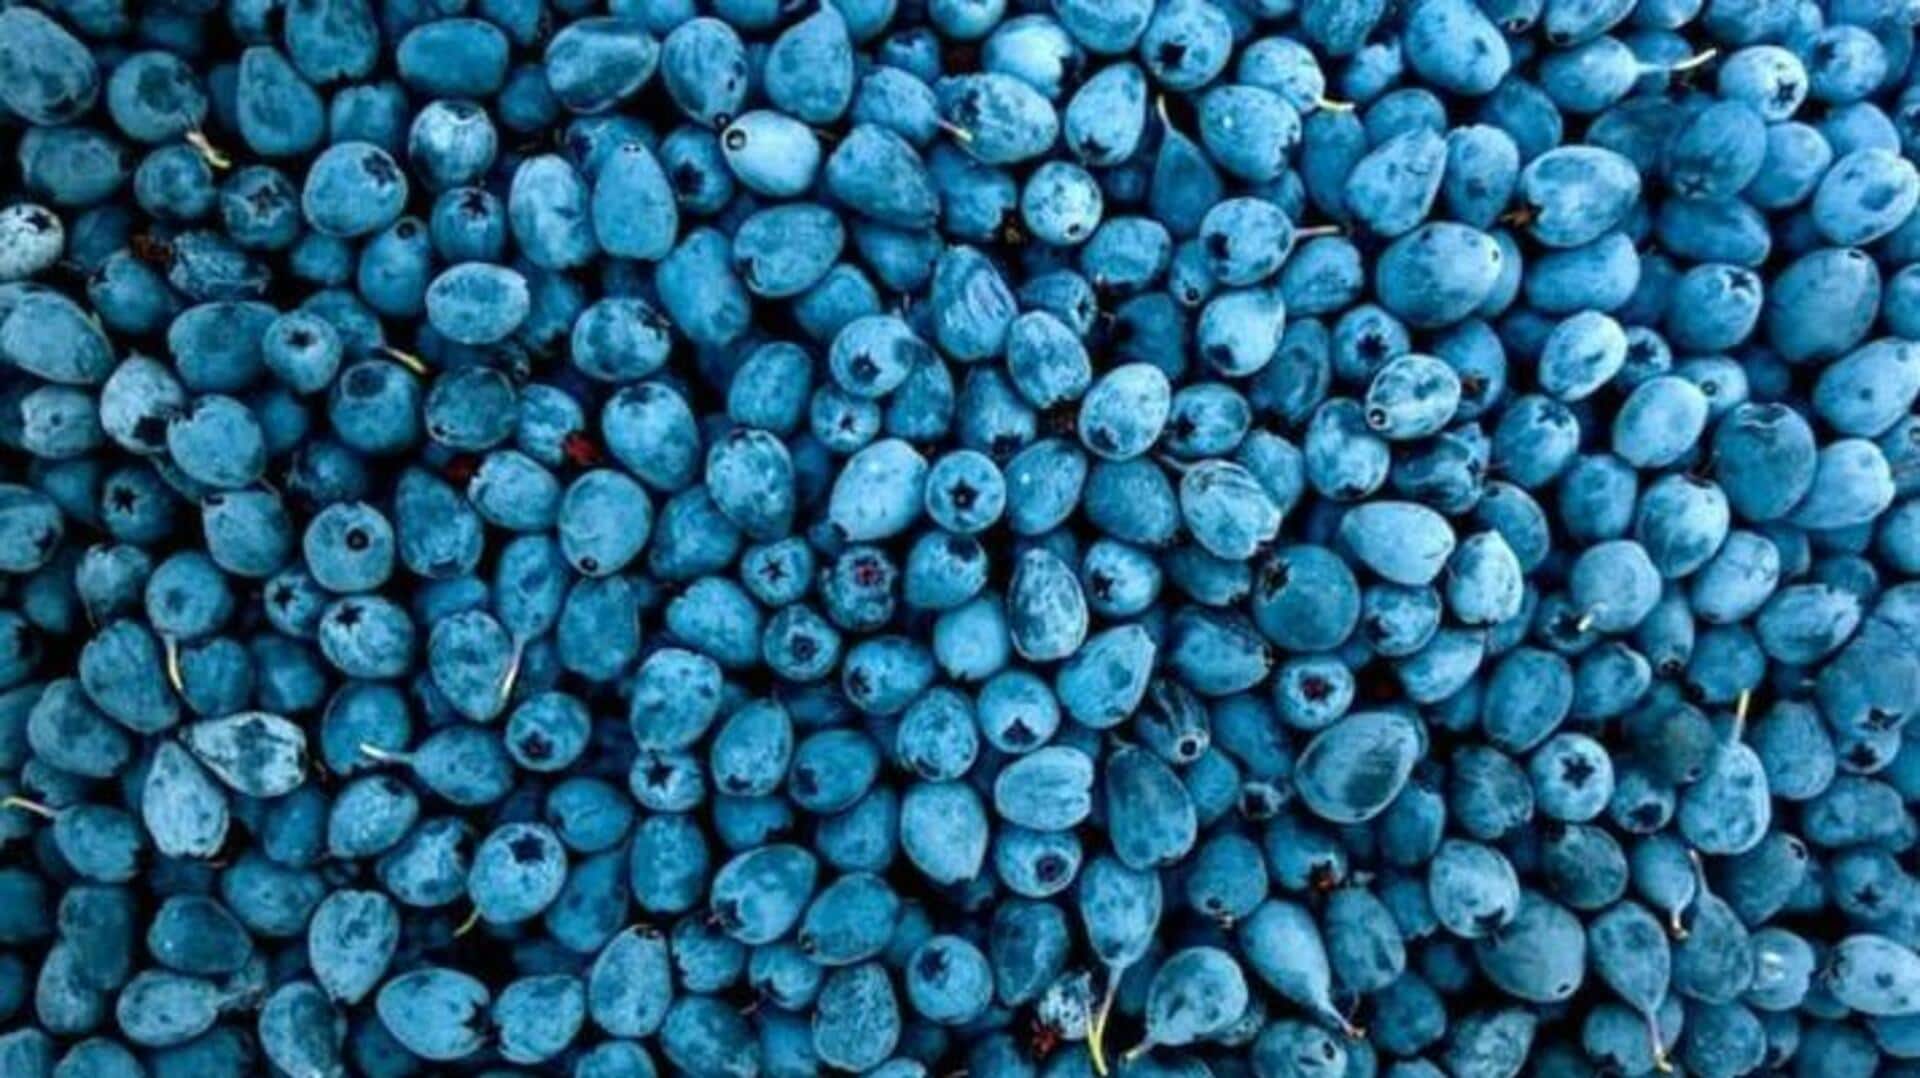 National Blueberry month: బ్లూ బెర్రీలతో ఫేస్ మాస్క్ ఇంట్లోనే ఇలా తయారు చేసుకోండి 